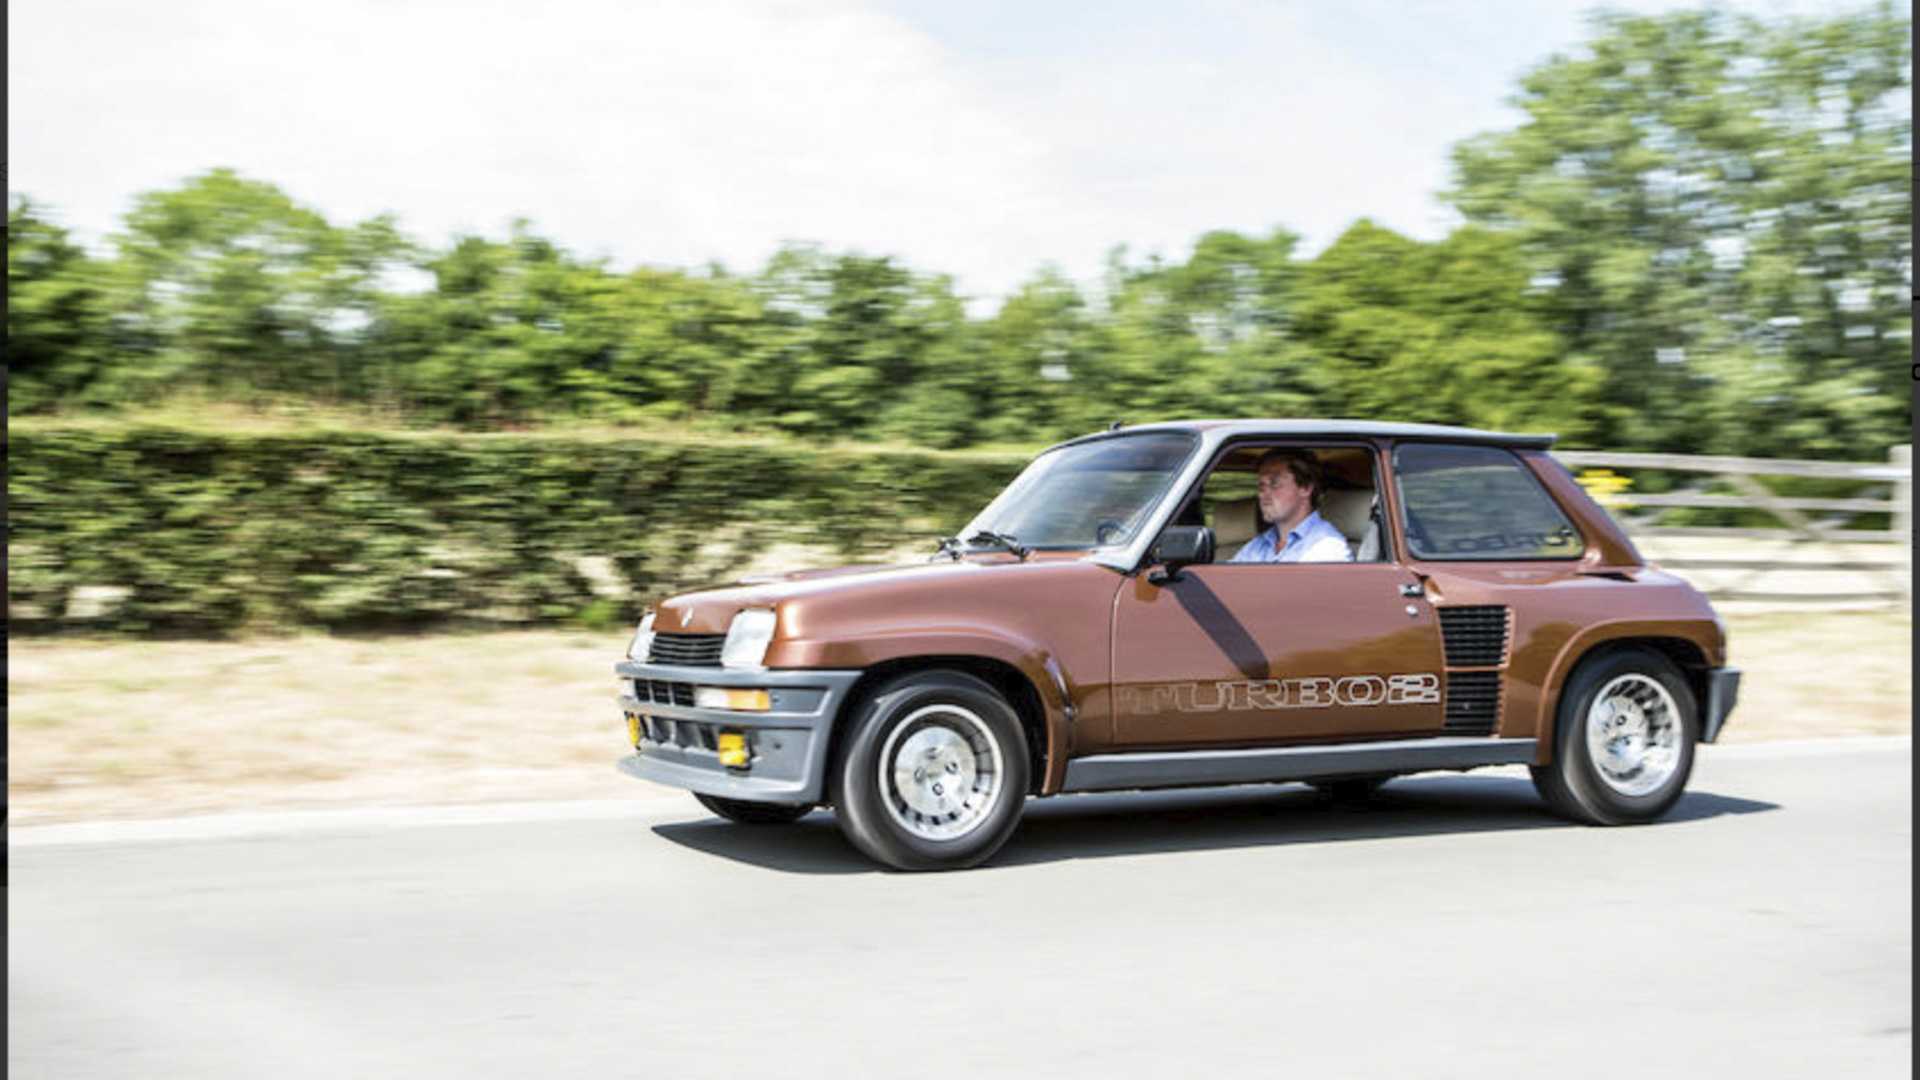 Alguien ha pagado más de 100.000 euros por un Renault 5 Turbo 2 de 1983...